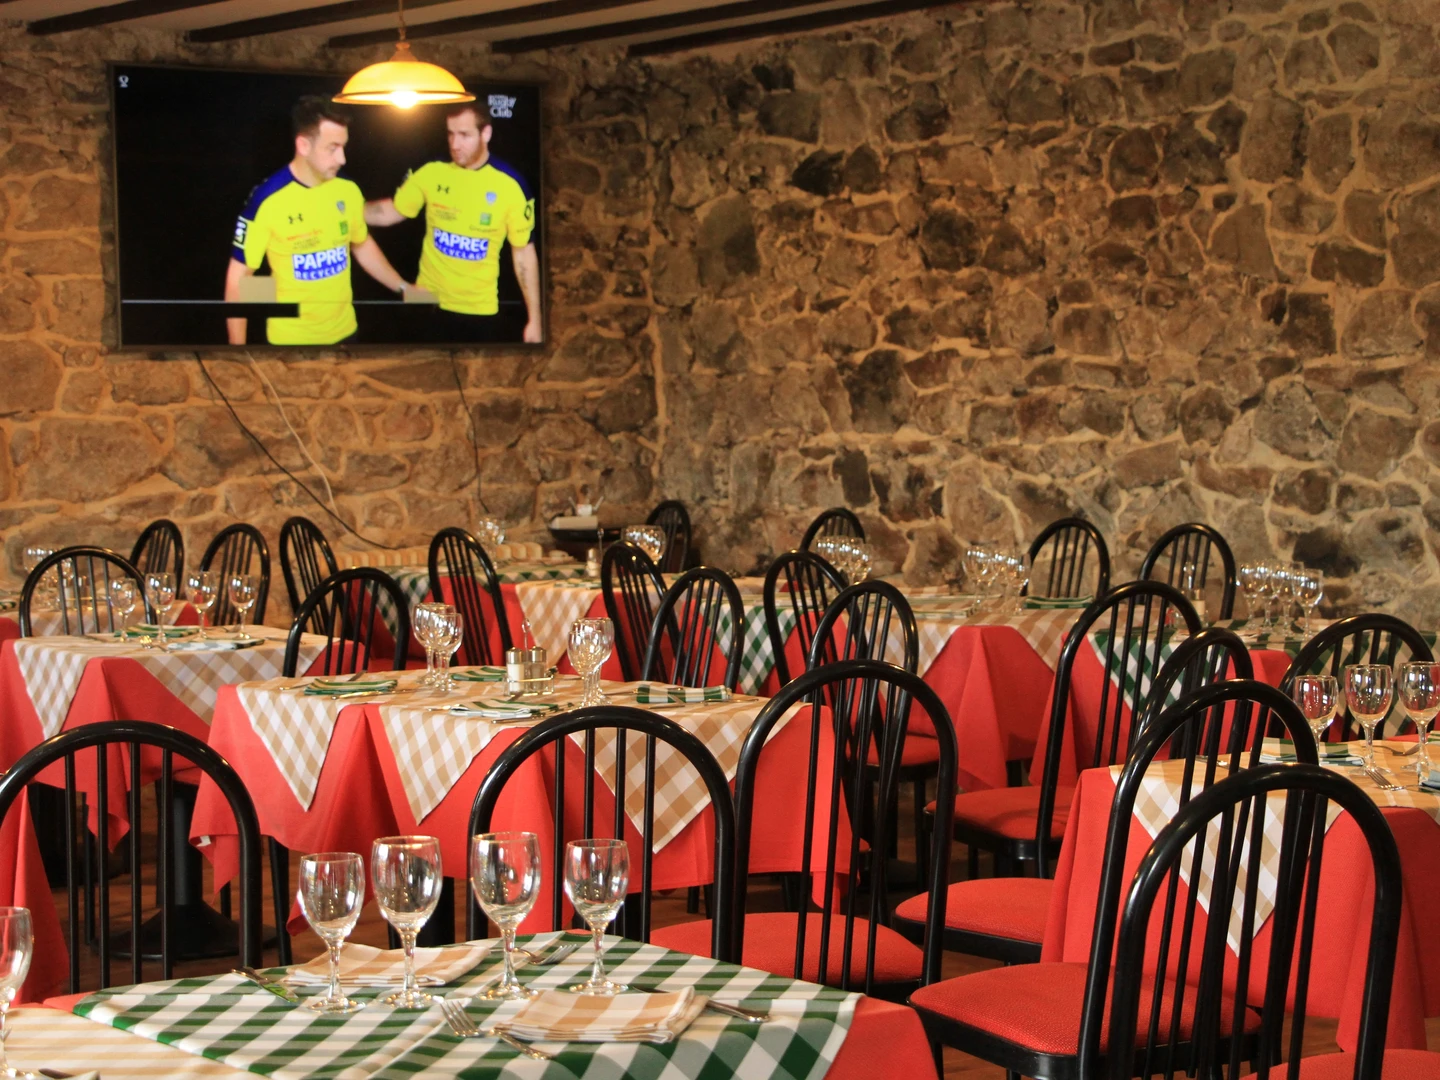 L’Auberge de La Belette est un hôtel restaurant bar de caractère, 2*, labellisé Qualité Tourisme, Clef verte et Tourisme et Handicap… Une « pépite » à haut potentiel à proximité de la sous-préfecture d’Ambert au cœur du Parc Naturel Régional du Livradois Forez ! (50mn de Clermont-Ferrand, 2h de Lyon, 5h de Paris).

Nichée au cœur de l'Auvergne, dans le parc naturel du Livradois Forez, l'auberge de la Belette est un établissement offrant une expérience authentique, avec pour ambition d'apporter des moments de convivialité à sa clientèle dans un cadre rustique.

Non loin de la ville d'Ambert, vous aurez l'occasion de séjourner dans cet établissement au décor de montagne, en pleine immersion dans la vie Auvergnate. L'établissement bénéficie d'une situation idéale, au départ de nombreux sentiers pédestres et au cœur du plus grand domaine VTT de France (2700 km).

La partie restauration est constituée de 3 espaces indépendants d’environ 48 couverts chacun :

une salle rustique avec poêle
une salle avec cheminée (insert)
une terrasse avec vue

La cuisine est communicante avec les 3 espaces, entièrement aménagée et équipée aux normes en vigueur (piano, four, frigo, congélateur, plonge, chambre froide… Espace préparation chaud, préparation froid, cave...).

La partie hébergement (utilisable sous forme hôtel, chambre d’hôtes ou gîte) comprend 7 chambres, organisées en 17 couchages pour la norme 2* (19 couchages entièrement modulables, neufs et confortables disponibles). Chaque chambre comprend une douche ou baignoire et WC. 2 ou 3 chambres ont une capacité de 3 ou 4 personnes (familiale ou suite).

D’autres espaces valorisent l’établissement pour l’accueil clientèle ou la fonctionnalité du travail : piscine couverte, salle de détente, terrasses privatives, jardin, parking… buanderie, bureau-boutique-réception, réserve, grenier…

L’établissement comprend également un comptoir de bar-réception et une licence IV.

Les toilettes sont neuves et aux normes d’accessibilité. L’hébergement n’est pas accessible aux PMR mais homologué pour les 3 autres handicaps objets de la labellisation (auditif, visuel et mental).

Il y a des vestiaires pour le personnel et un appartement de fonction (90m2, 5 chambres, accès indépendant, proximité village avec école et collège).

Le bien comprend également un hangar de 100m² ainsi que 3,5 hectares de prairie.

Il y a une clientèle locale fidèle (70%) et saisonnière (nationale et internationale).

L’établissement a entièrement été refait à neuf entre 2016 et 2019 : assainissement individuel, chaudière à granulés, panneaux solaires pour le chauffage et la production électrique, isolation thermique et phonique …

Potentiel pour de nouvelles prestations : garage fermé, pâture de chevaux au pré

CA de 200 à 350 000 €

Location envisageable

Accompagnement à la reprise

Valeur du bien : 500 000 € - montages financiers pour transmission à étudier

Disponibilité immédiate

En zone de revitalisation rurale (ZRR), toute reprise de commerce bénéficie d’une exonération fiscale totale durant 5 ans, puis dégressive dans les années suivantes. Il est possible d’être accompagné techniquement et/ou financièrement par le Réseau Initiative, France Active, le Parc Livradois-Forez, la CMA, la CCI ou la BGE. Il existe également une aide destinée aux petites entreprises du commerce, à l’artisanat et aux services avec points de vente, en co-financement entre la Communauté de communes Ambert-Livradois-Forez et la Région Auvergne-Rhône-Alpes  (→ plus d'infos ici).